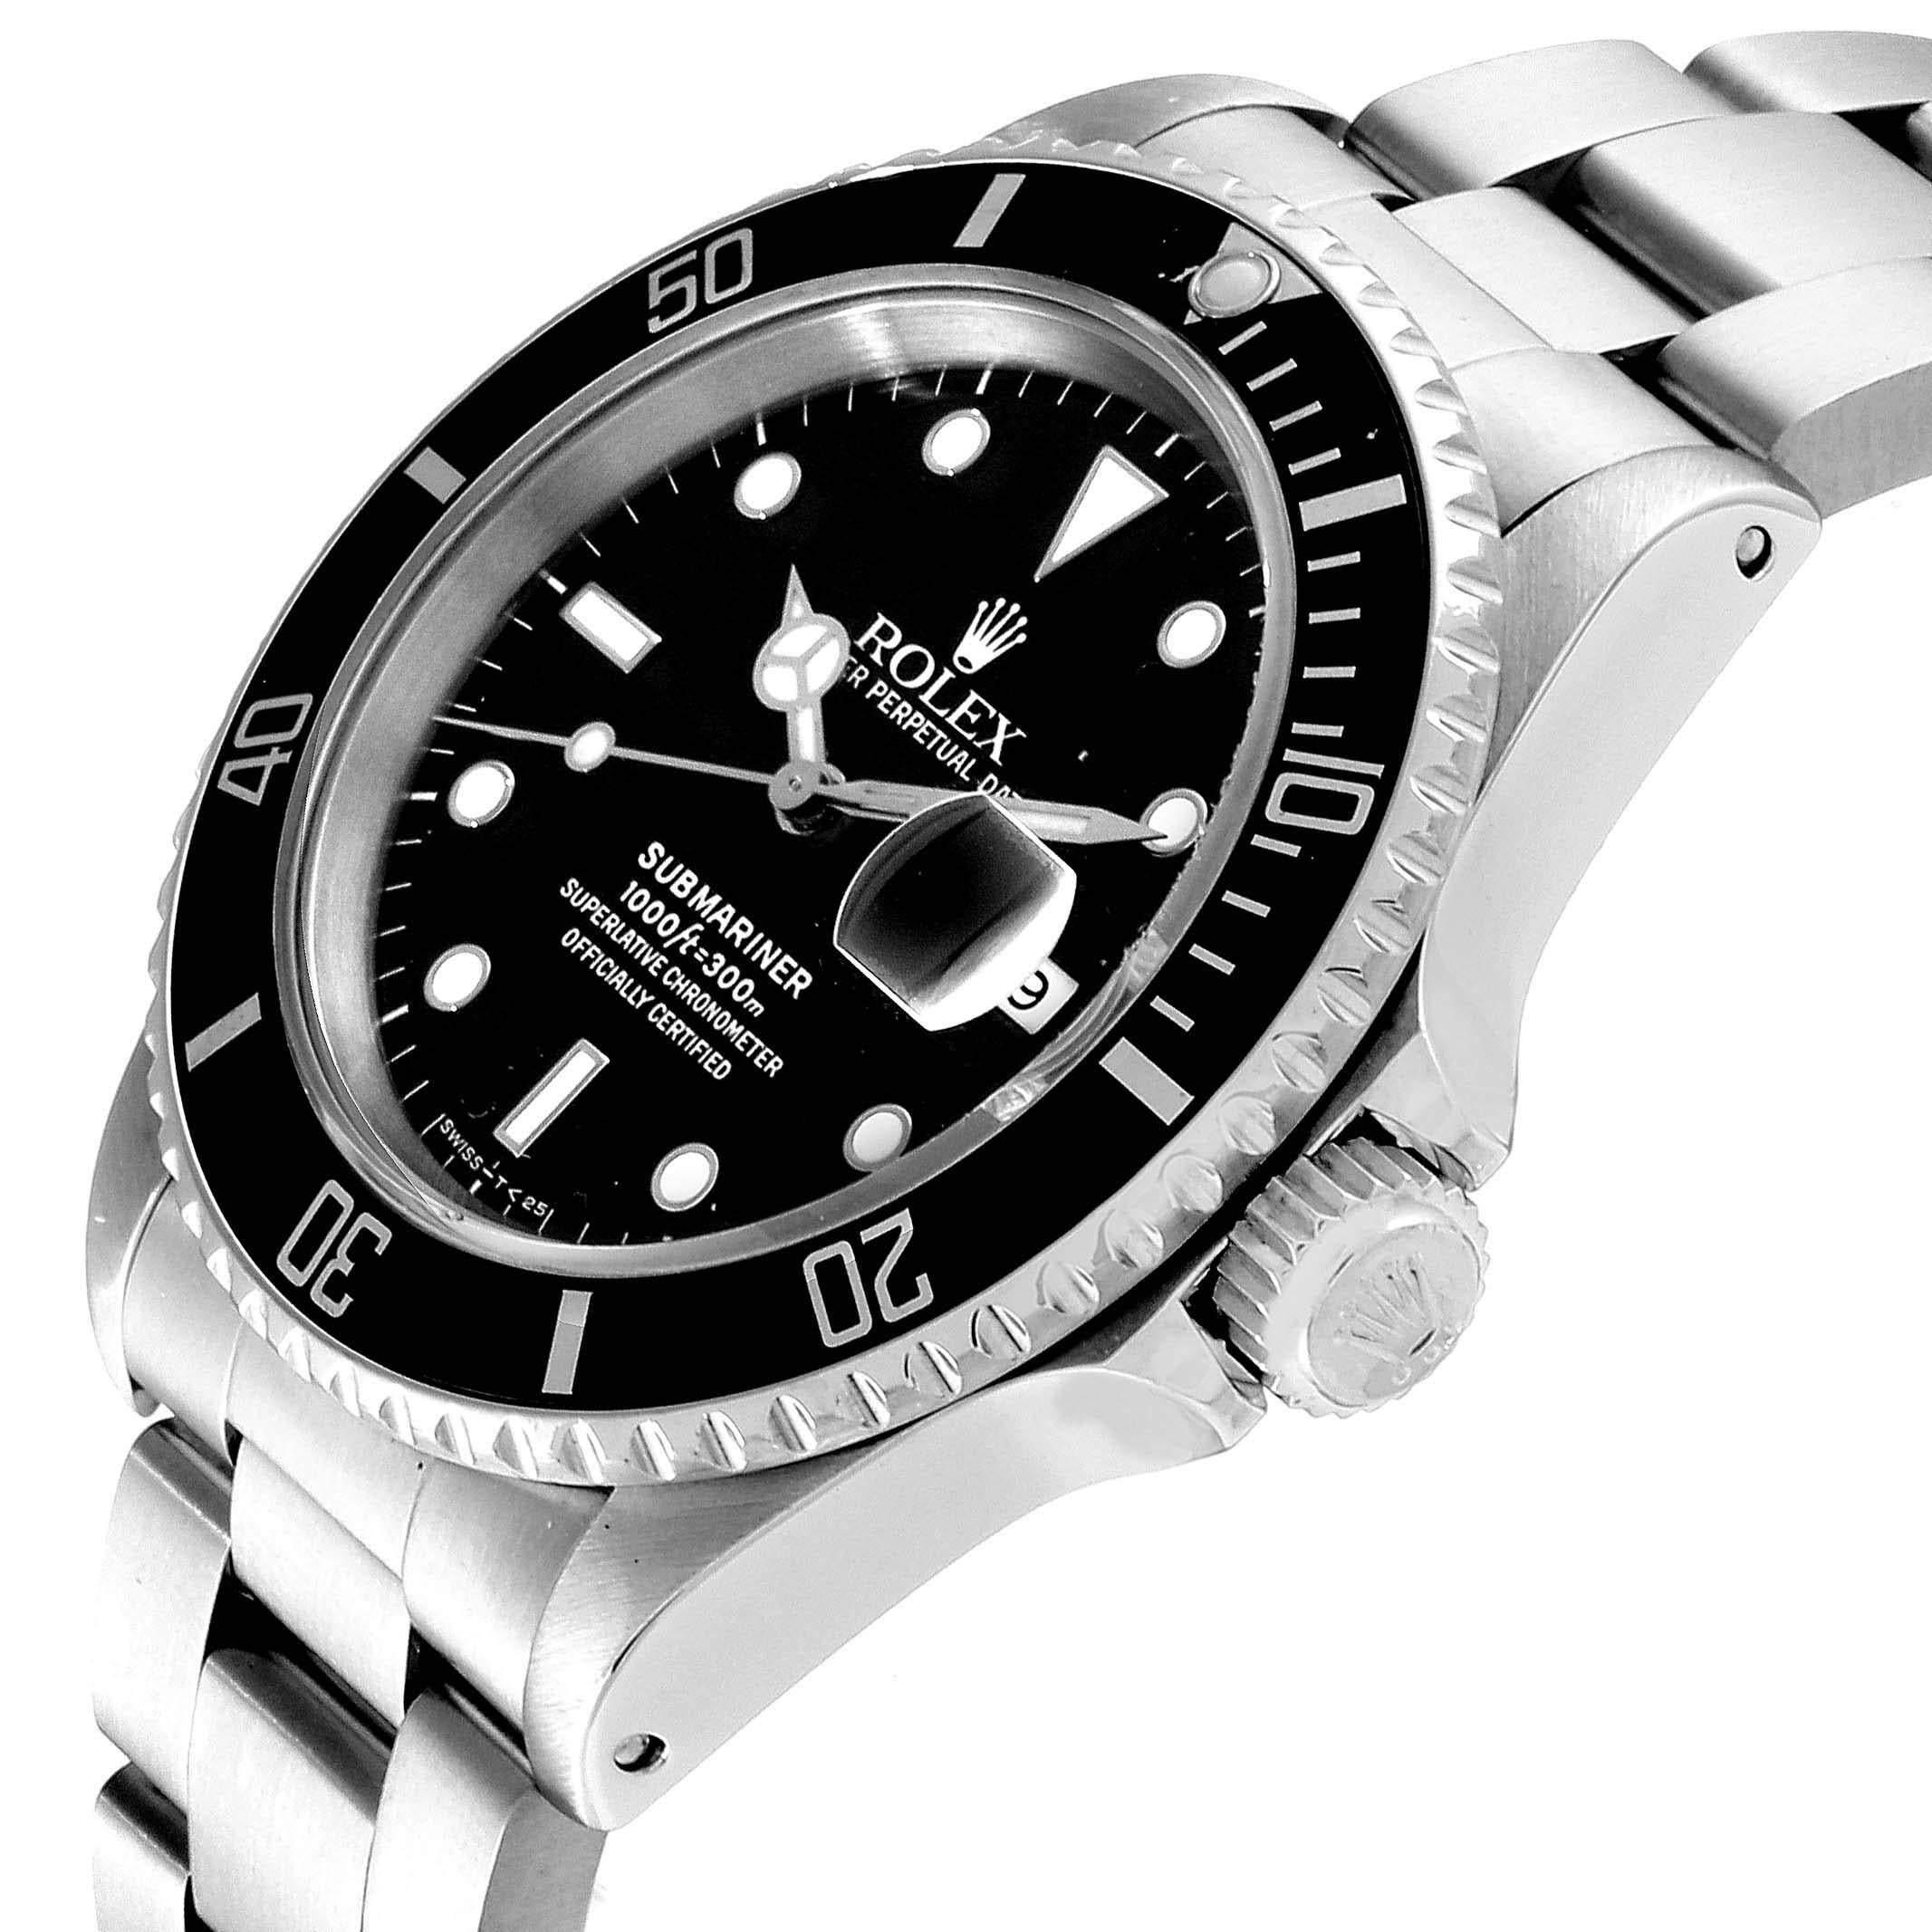 Rolex Submariner Date Stainless Steel Men's Watch 16610 2